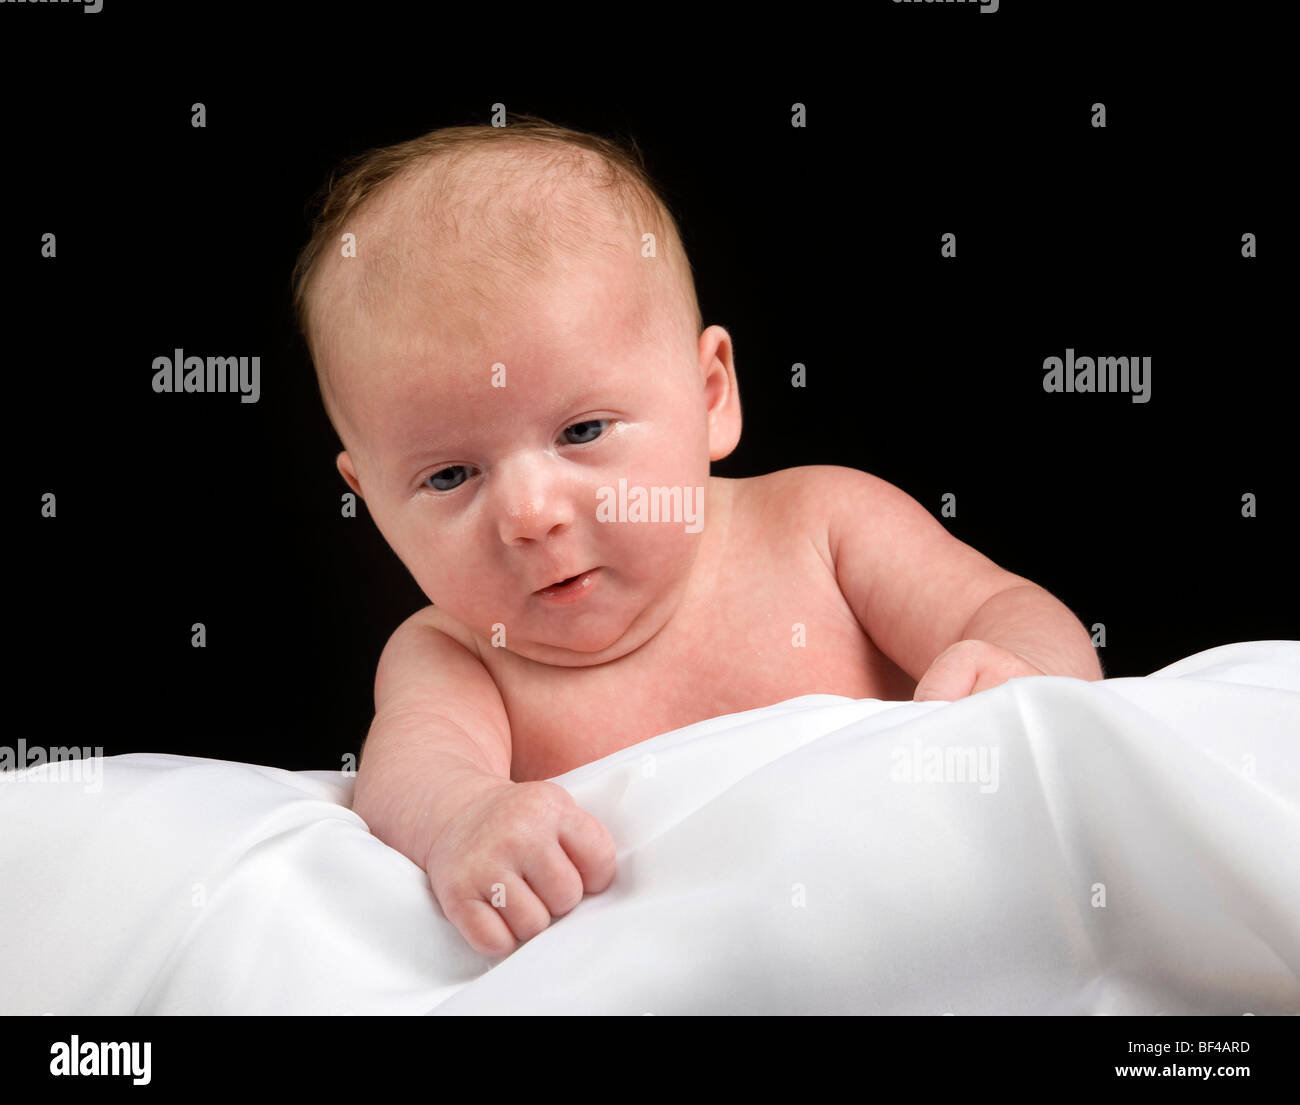 Baby, girl, 5 weeks old Stock Photo